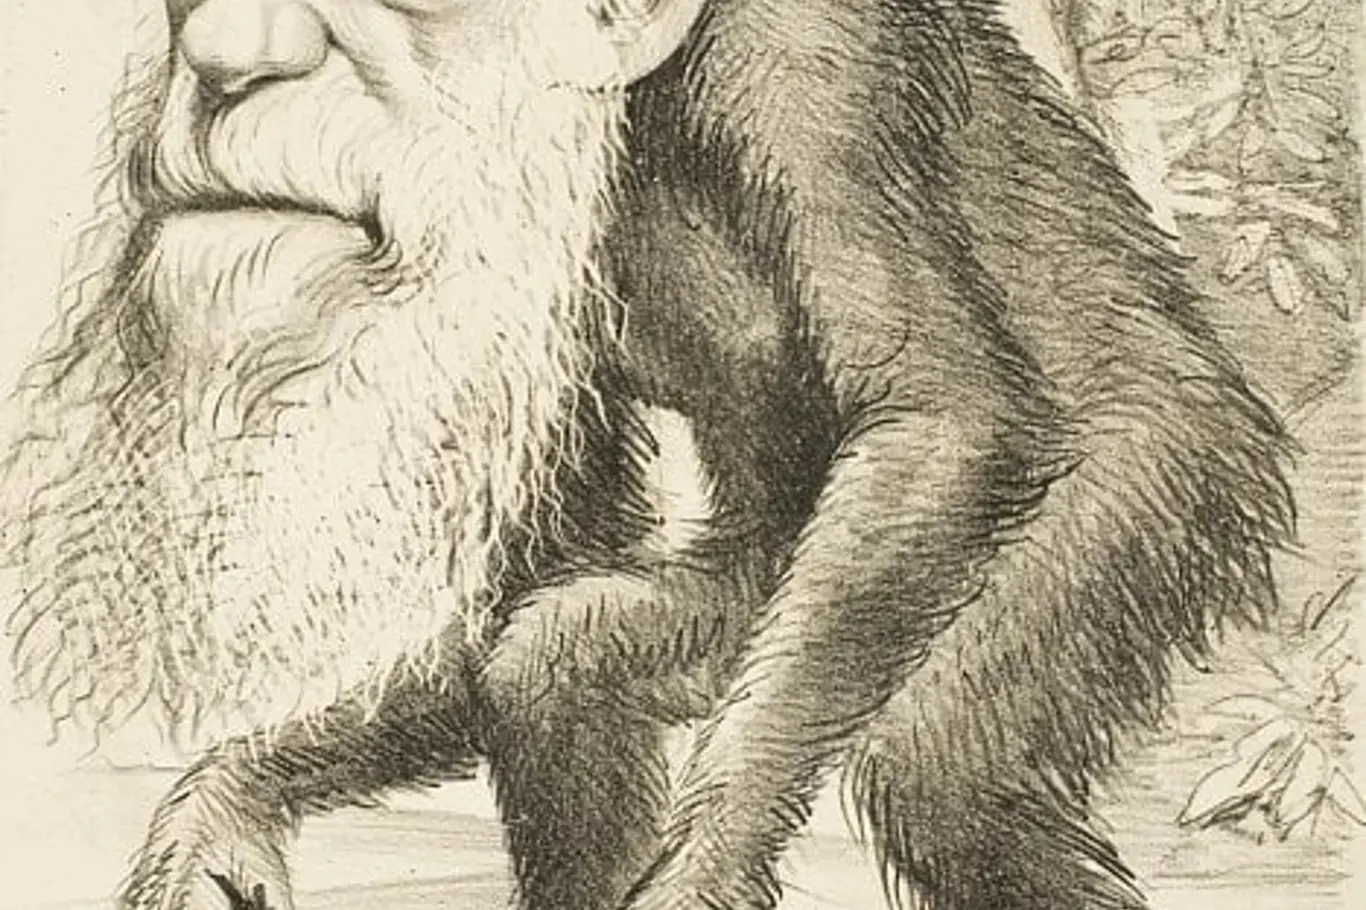 Karikatura z roku 1871, která následovala po vydání knihy The Descent of Man, byla typickou z mnoha karikatur zobrazujících Darwina s opičím tělem a identifikovala ho v populární kultuře jako hlavního autora evoluční teorie.